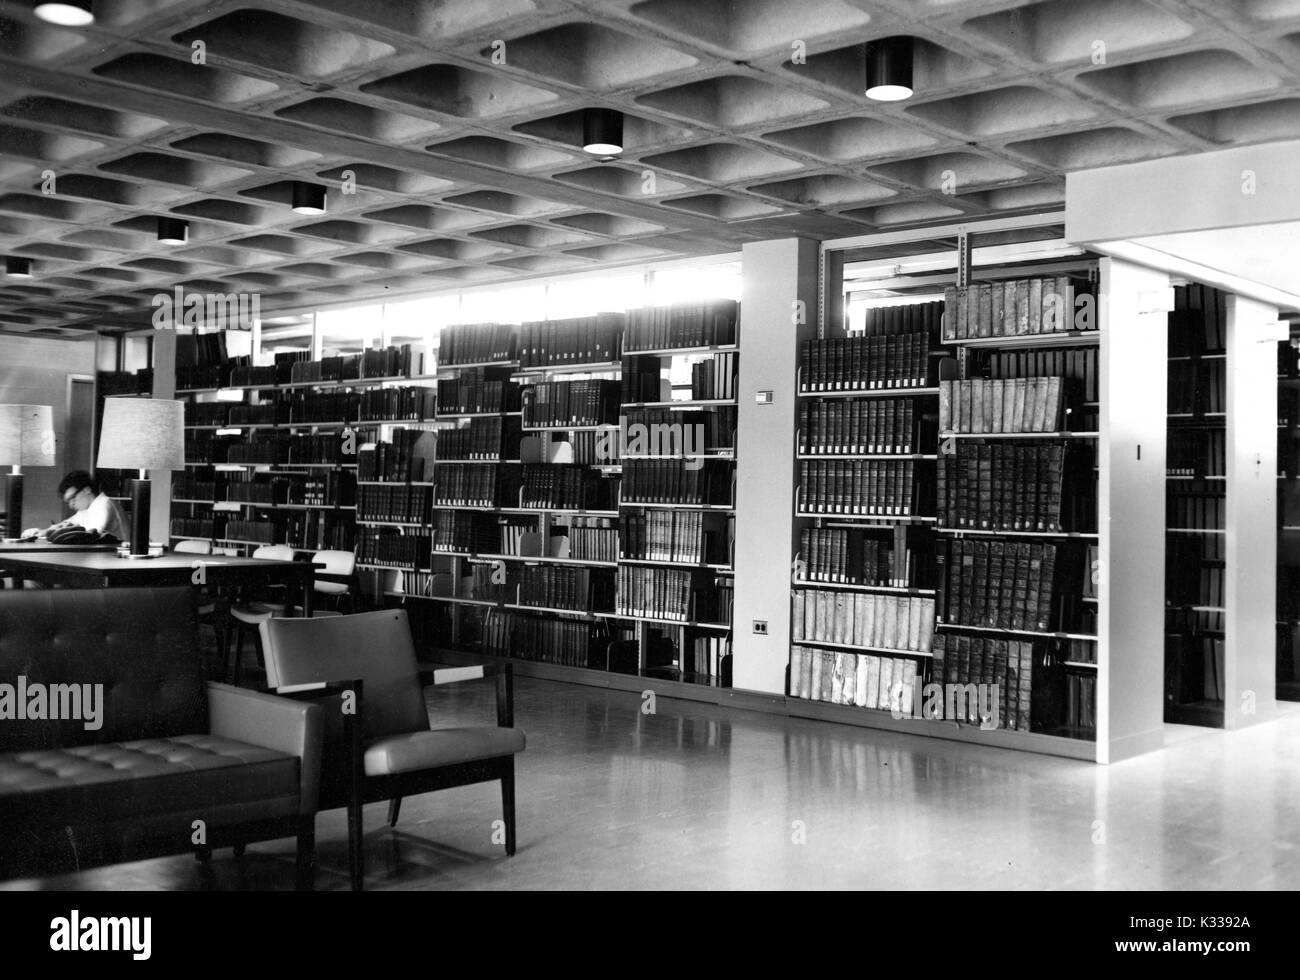 Auf einer U-Bahn lesen und studieren Ebene innerhalb des Milton S Eisenhower Bibliothek an der Johns Hopkins University, Stapel von Büchern stehen neben Tischen und Lampen für Studium, mit einem Schüler über ein Buch im Hintergrund gebuckelt, ruhige, schwach beleuchteten Raum, Baltimore, Maryland, 1965. Stockfoto